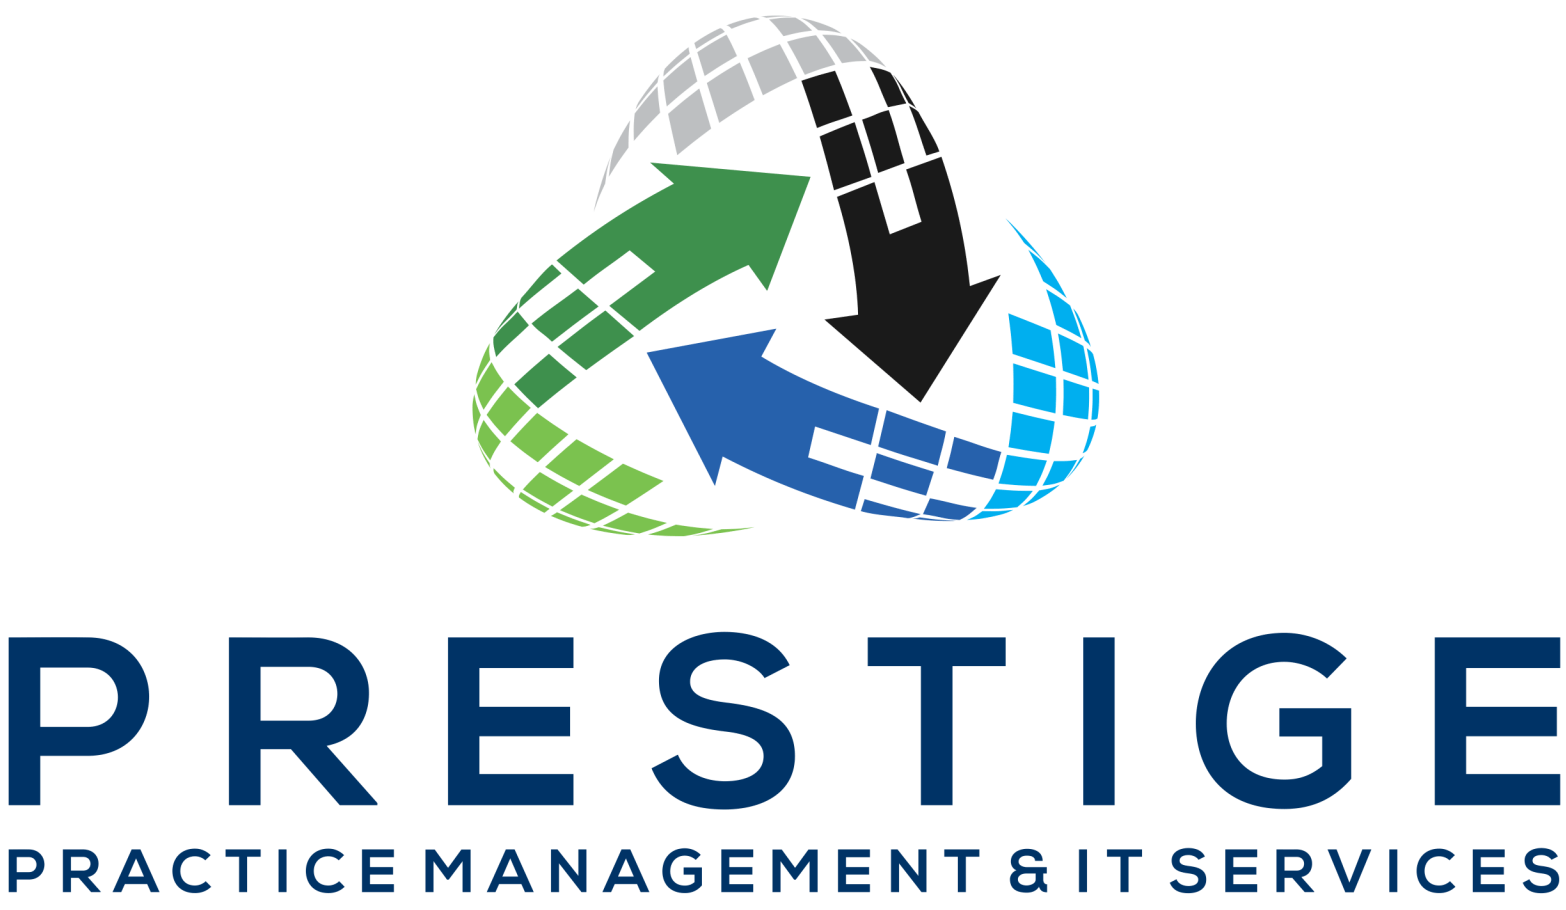 Prestige Practice Management & IT Services - Logo